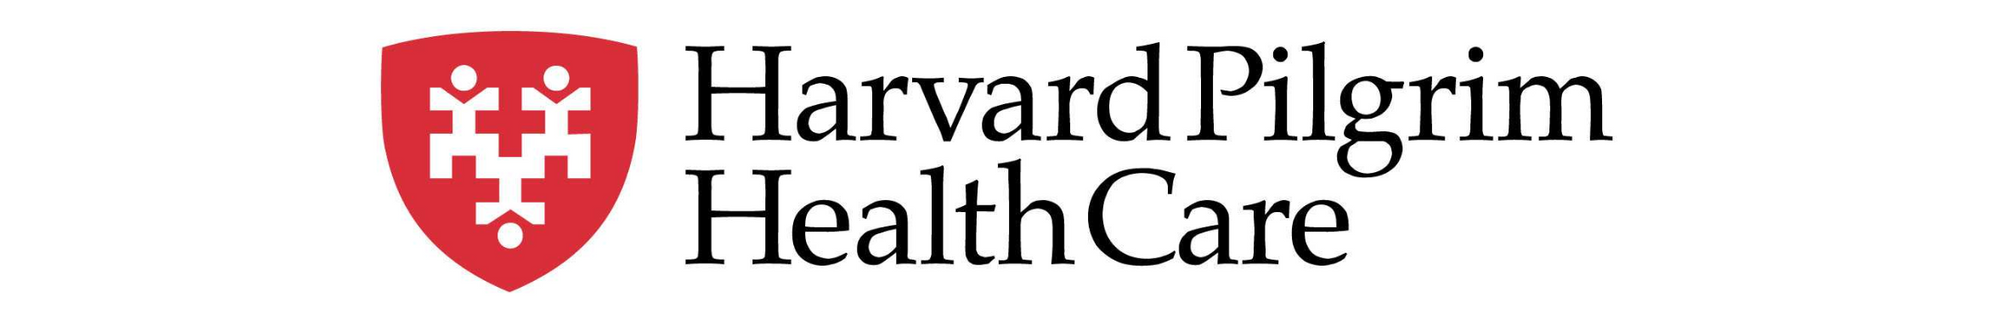 harvard-pilgrim-health-care.jpg